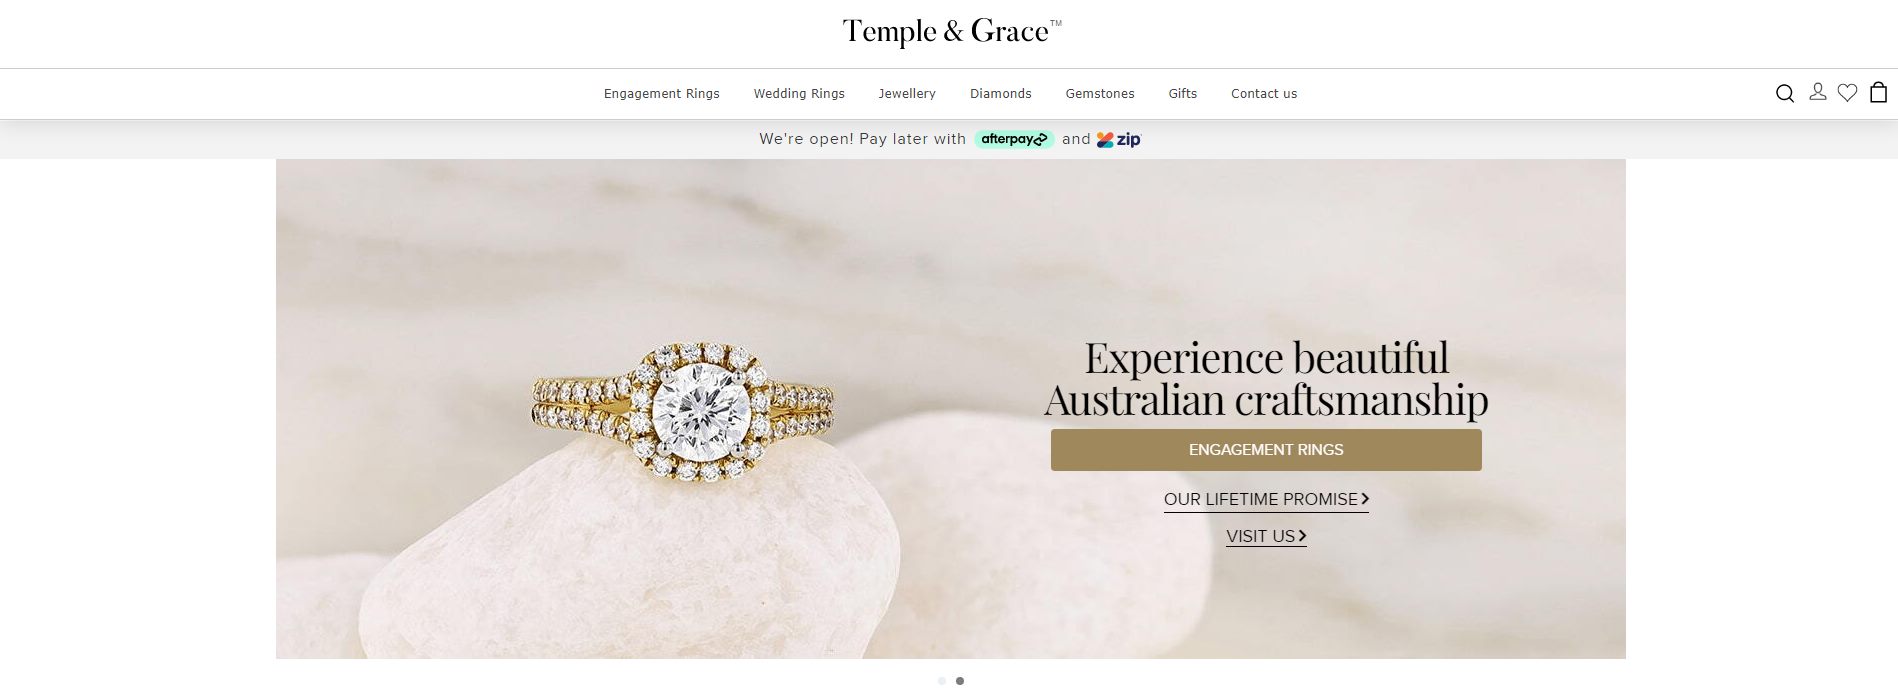 temple & grace engagement rings & wedding band shop melbourne